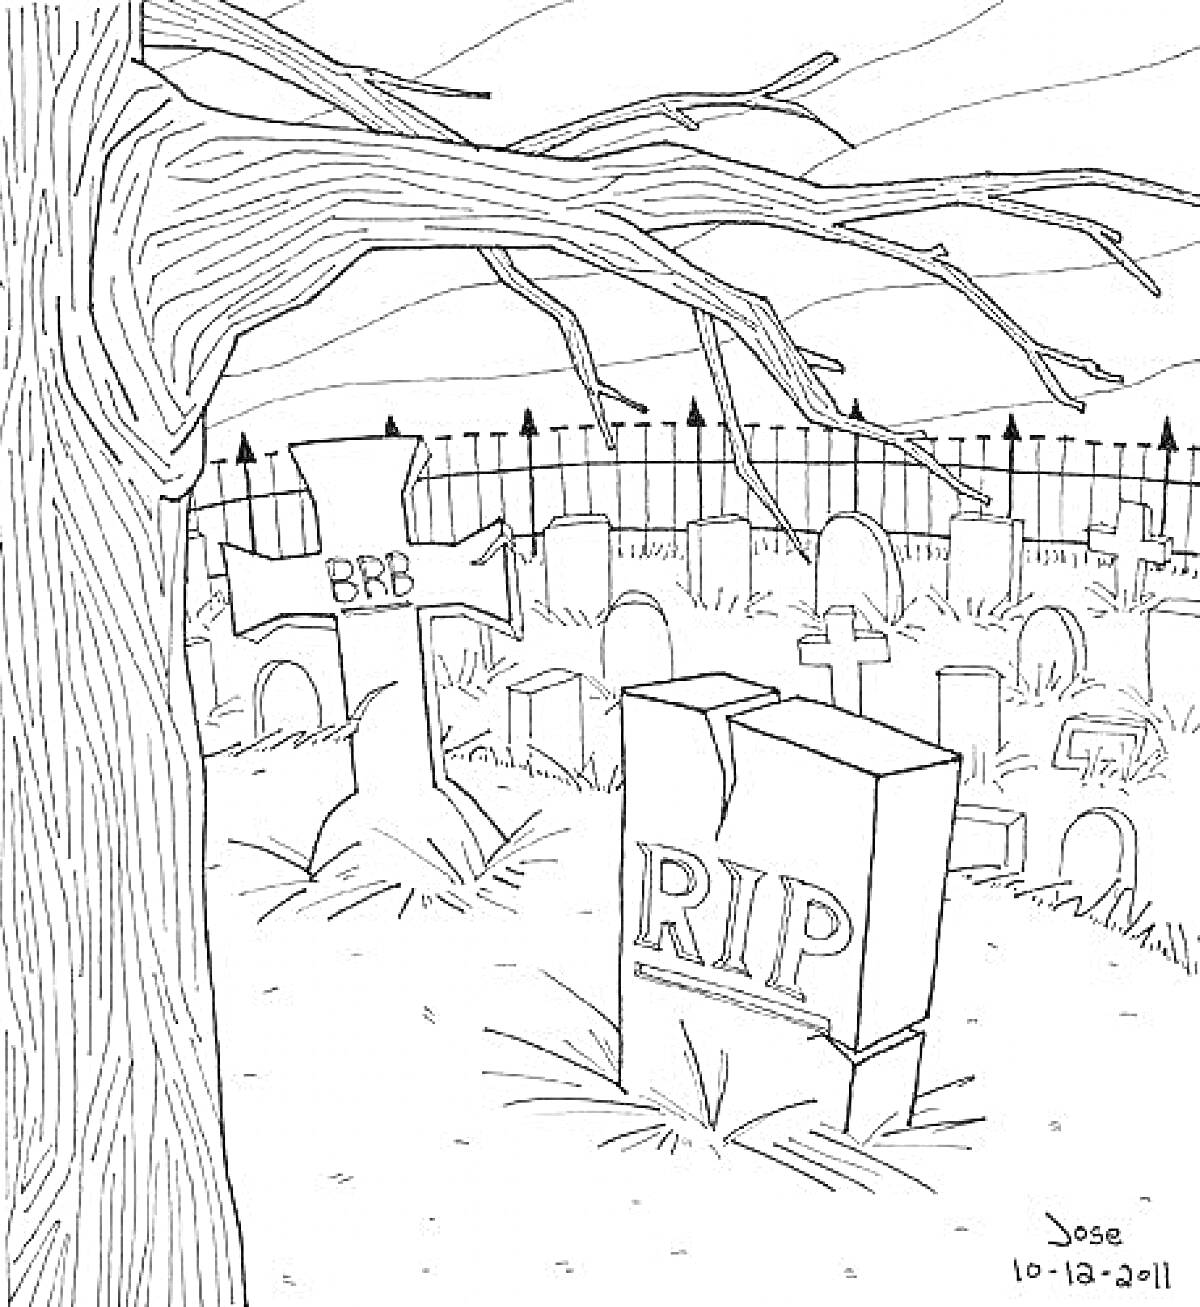 Раскраска Кладбище с надгробиями и деревом, надгробные надписи BRB и RIP, забор